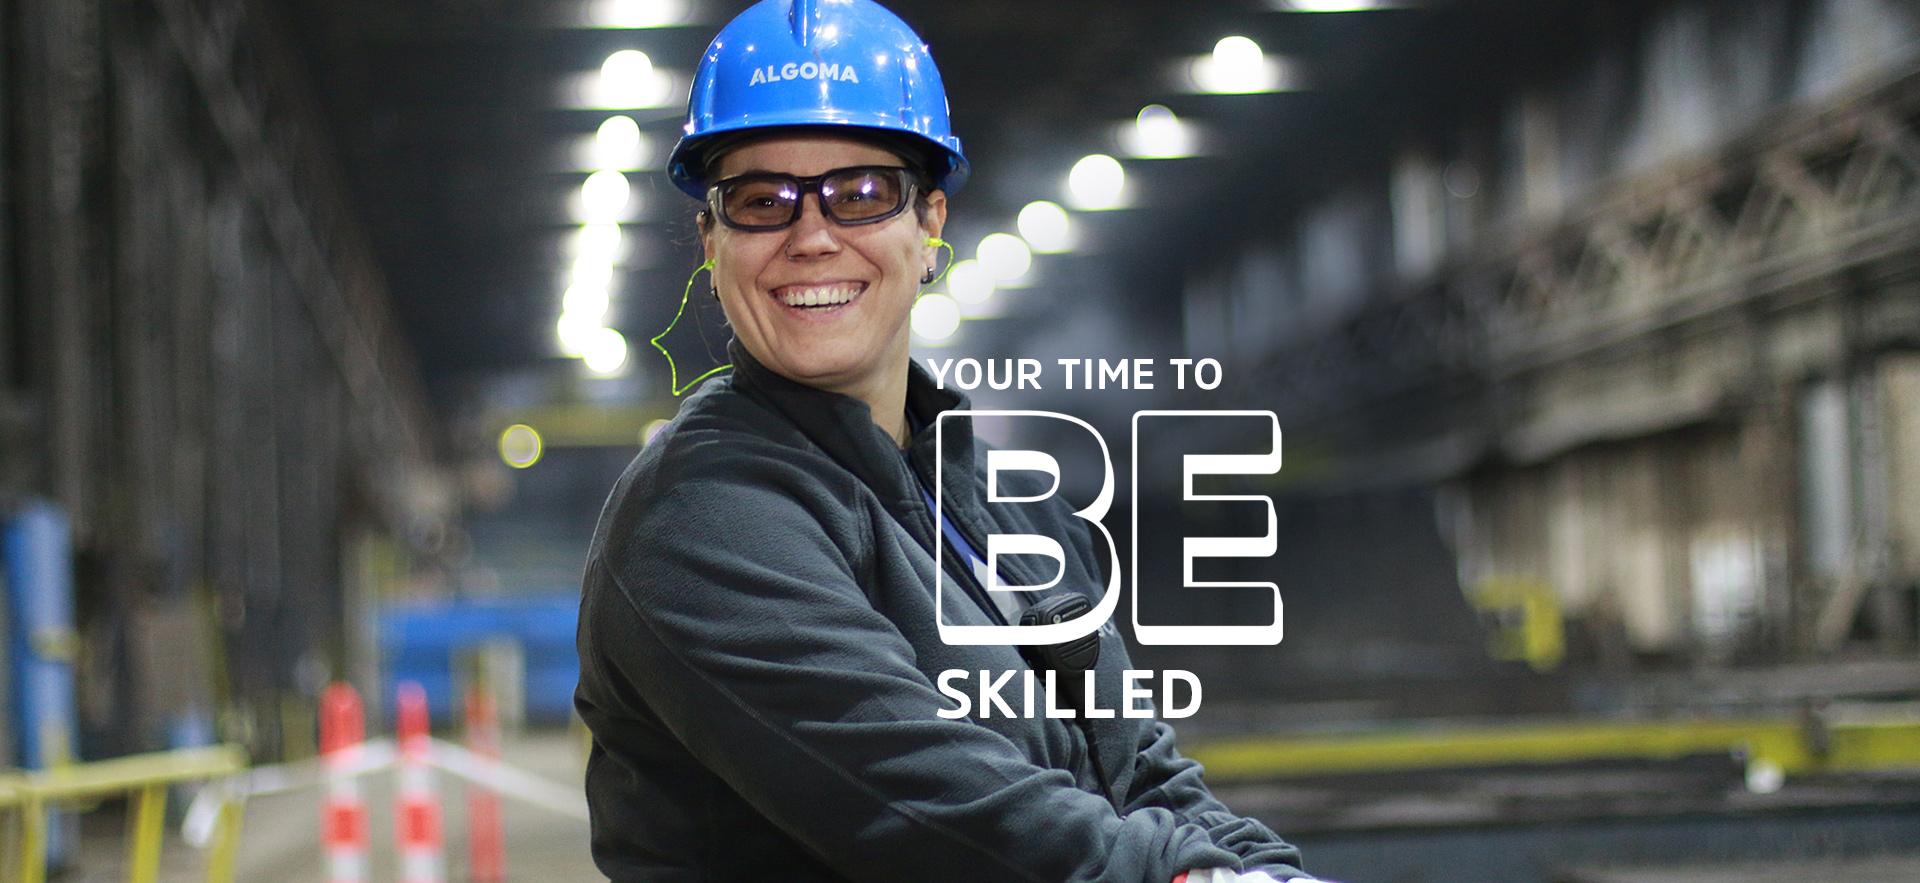 Tamara a skilled trades graduate on-site at Algoma Steel